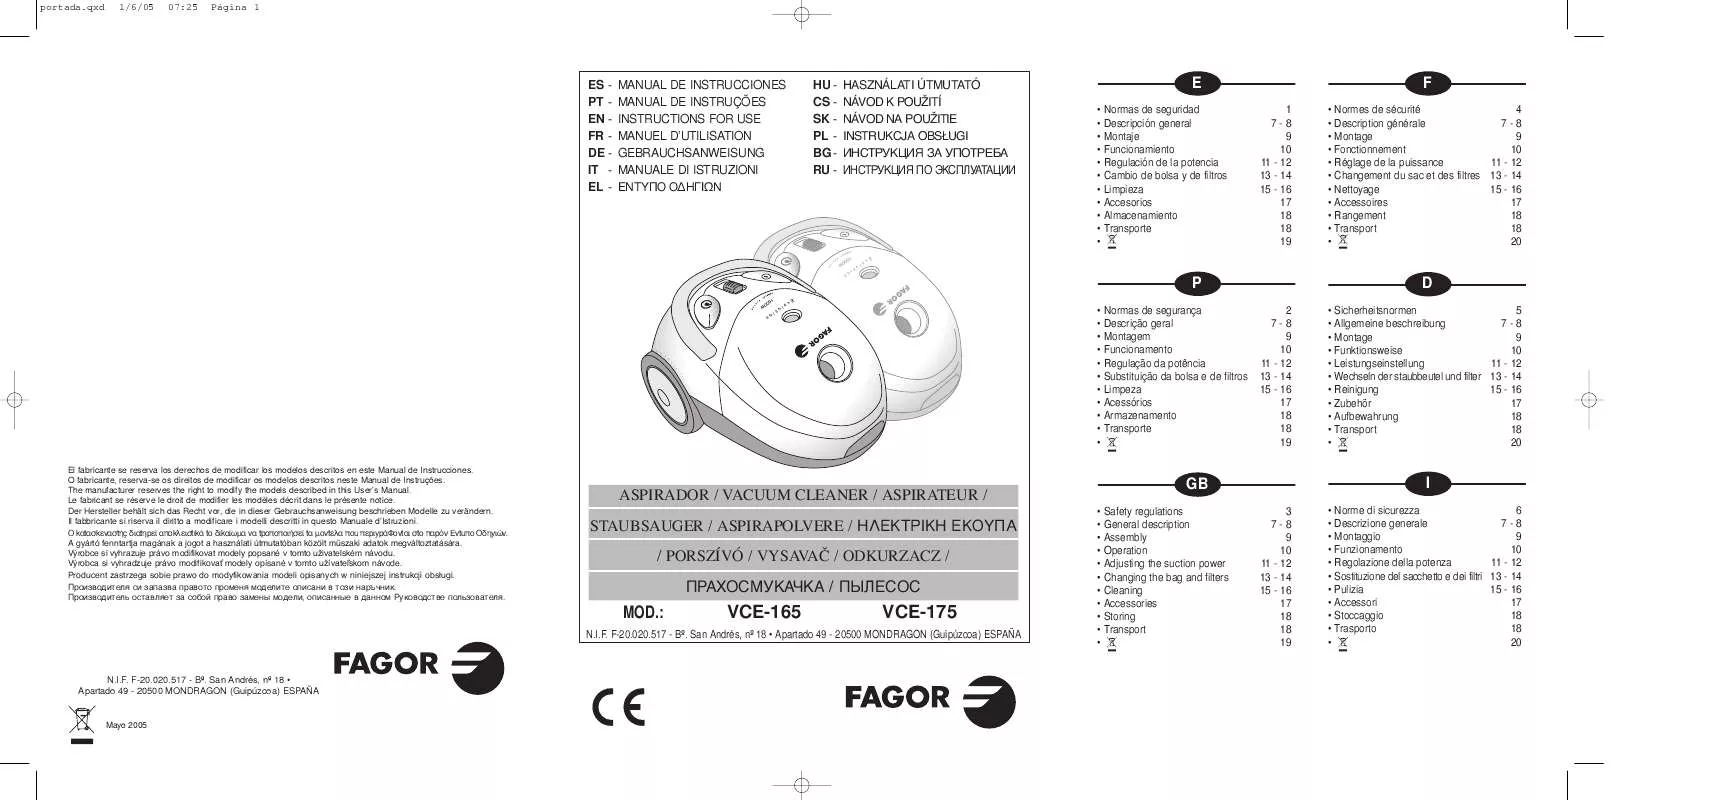 Mode d'emploi FAGOR VCE-175